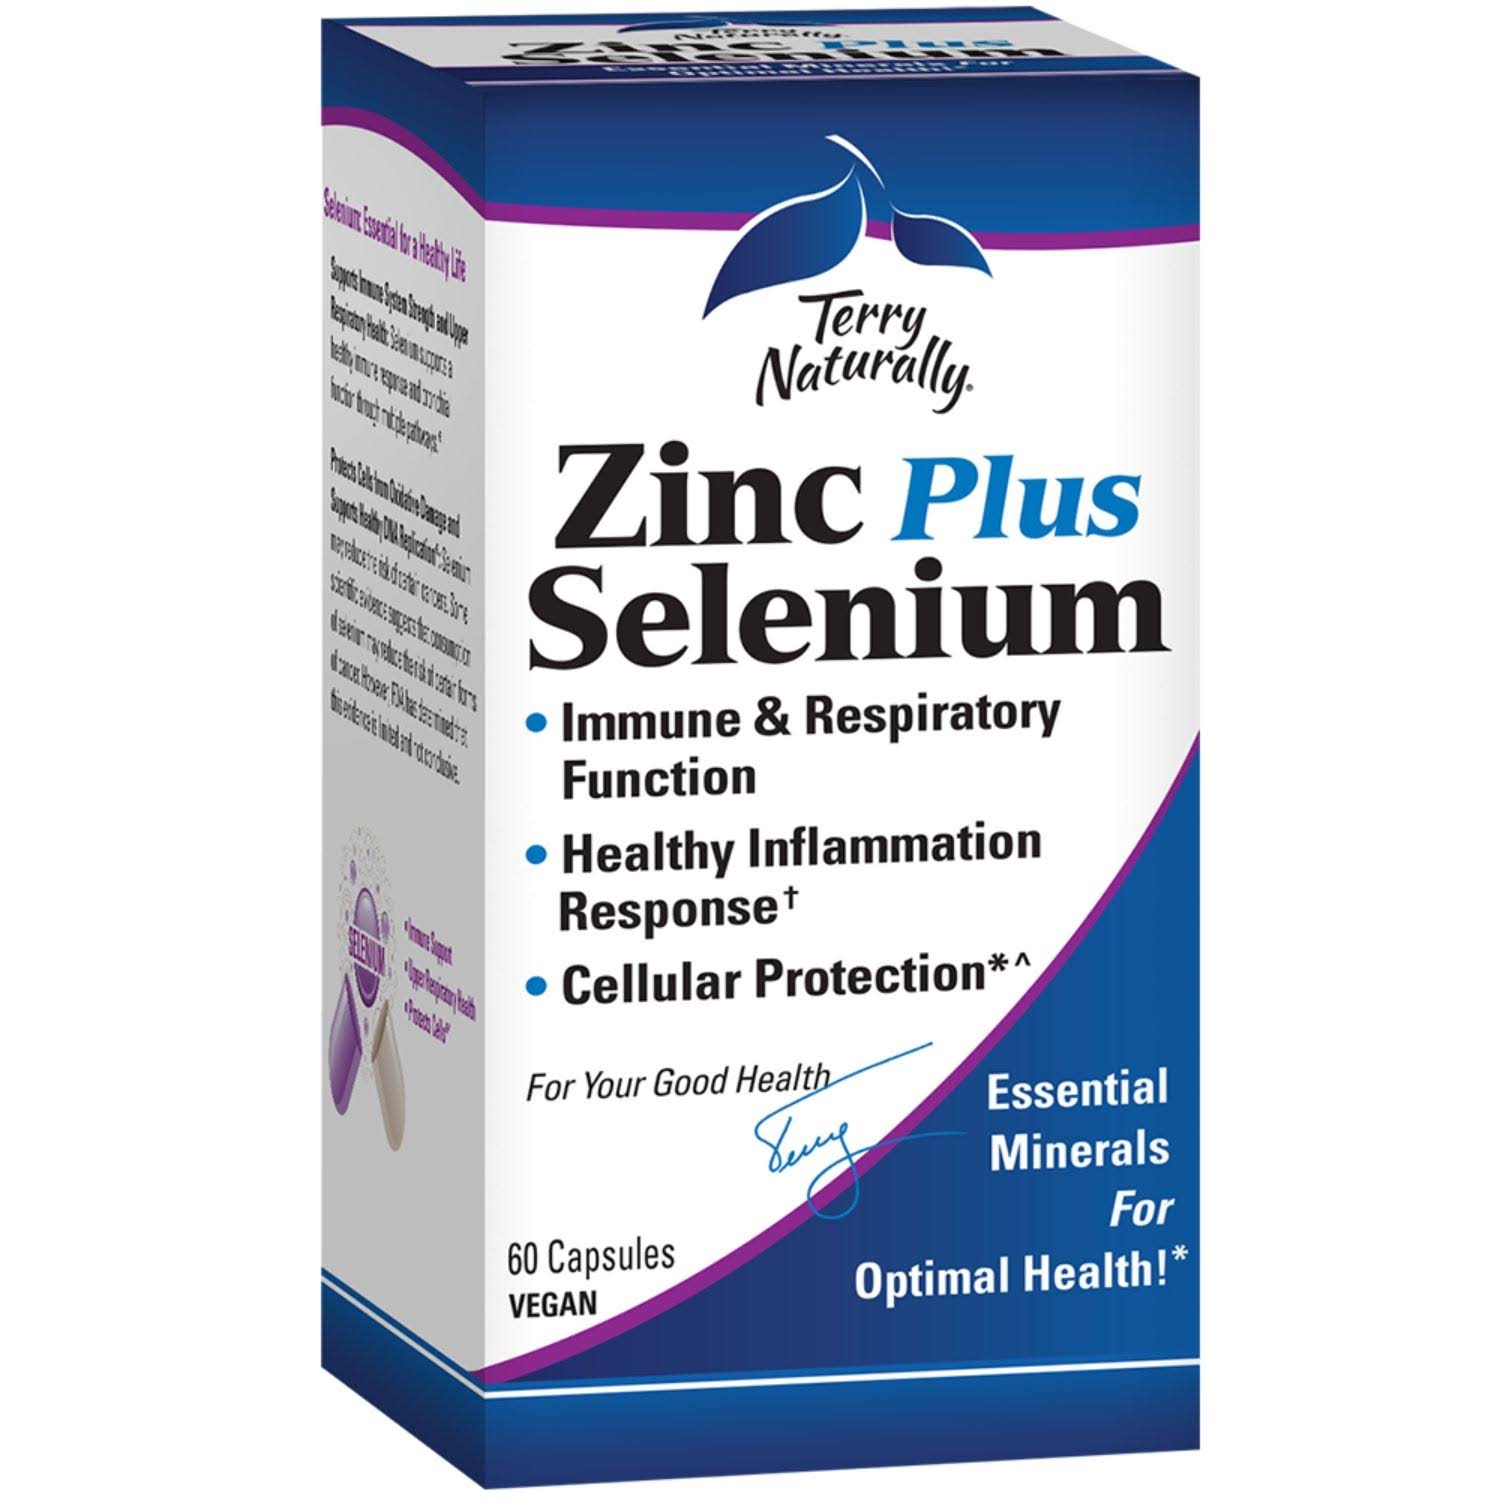 Terry Naturally Zinc Plus Selenium - 60 Capsules - Immune Support, Res